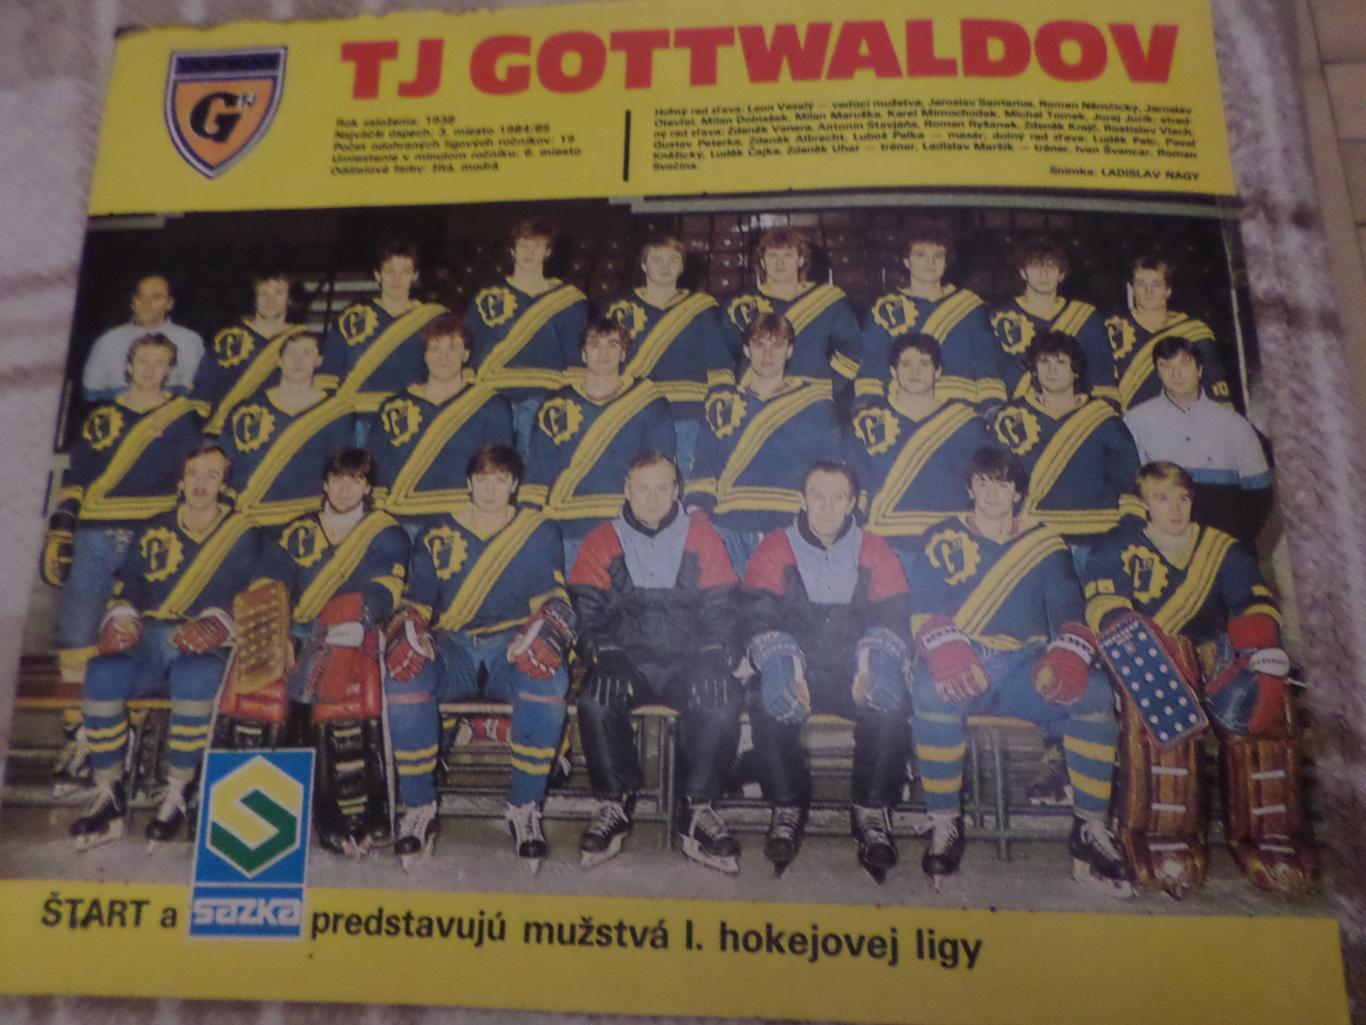 постер из журнала Старт Чехословакия хоккей ТЕ Готвальдов